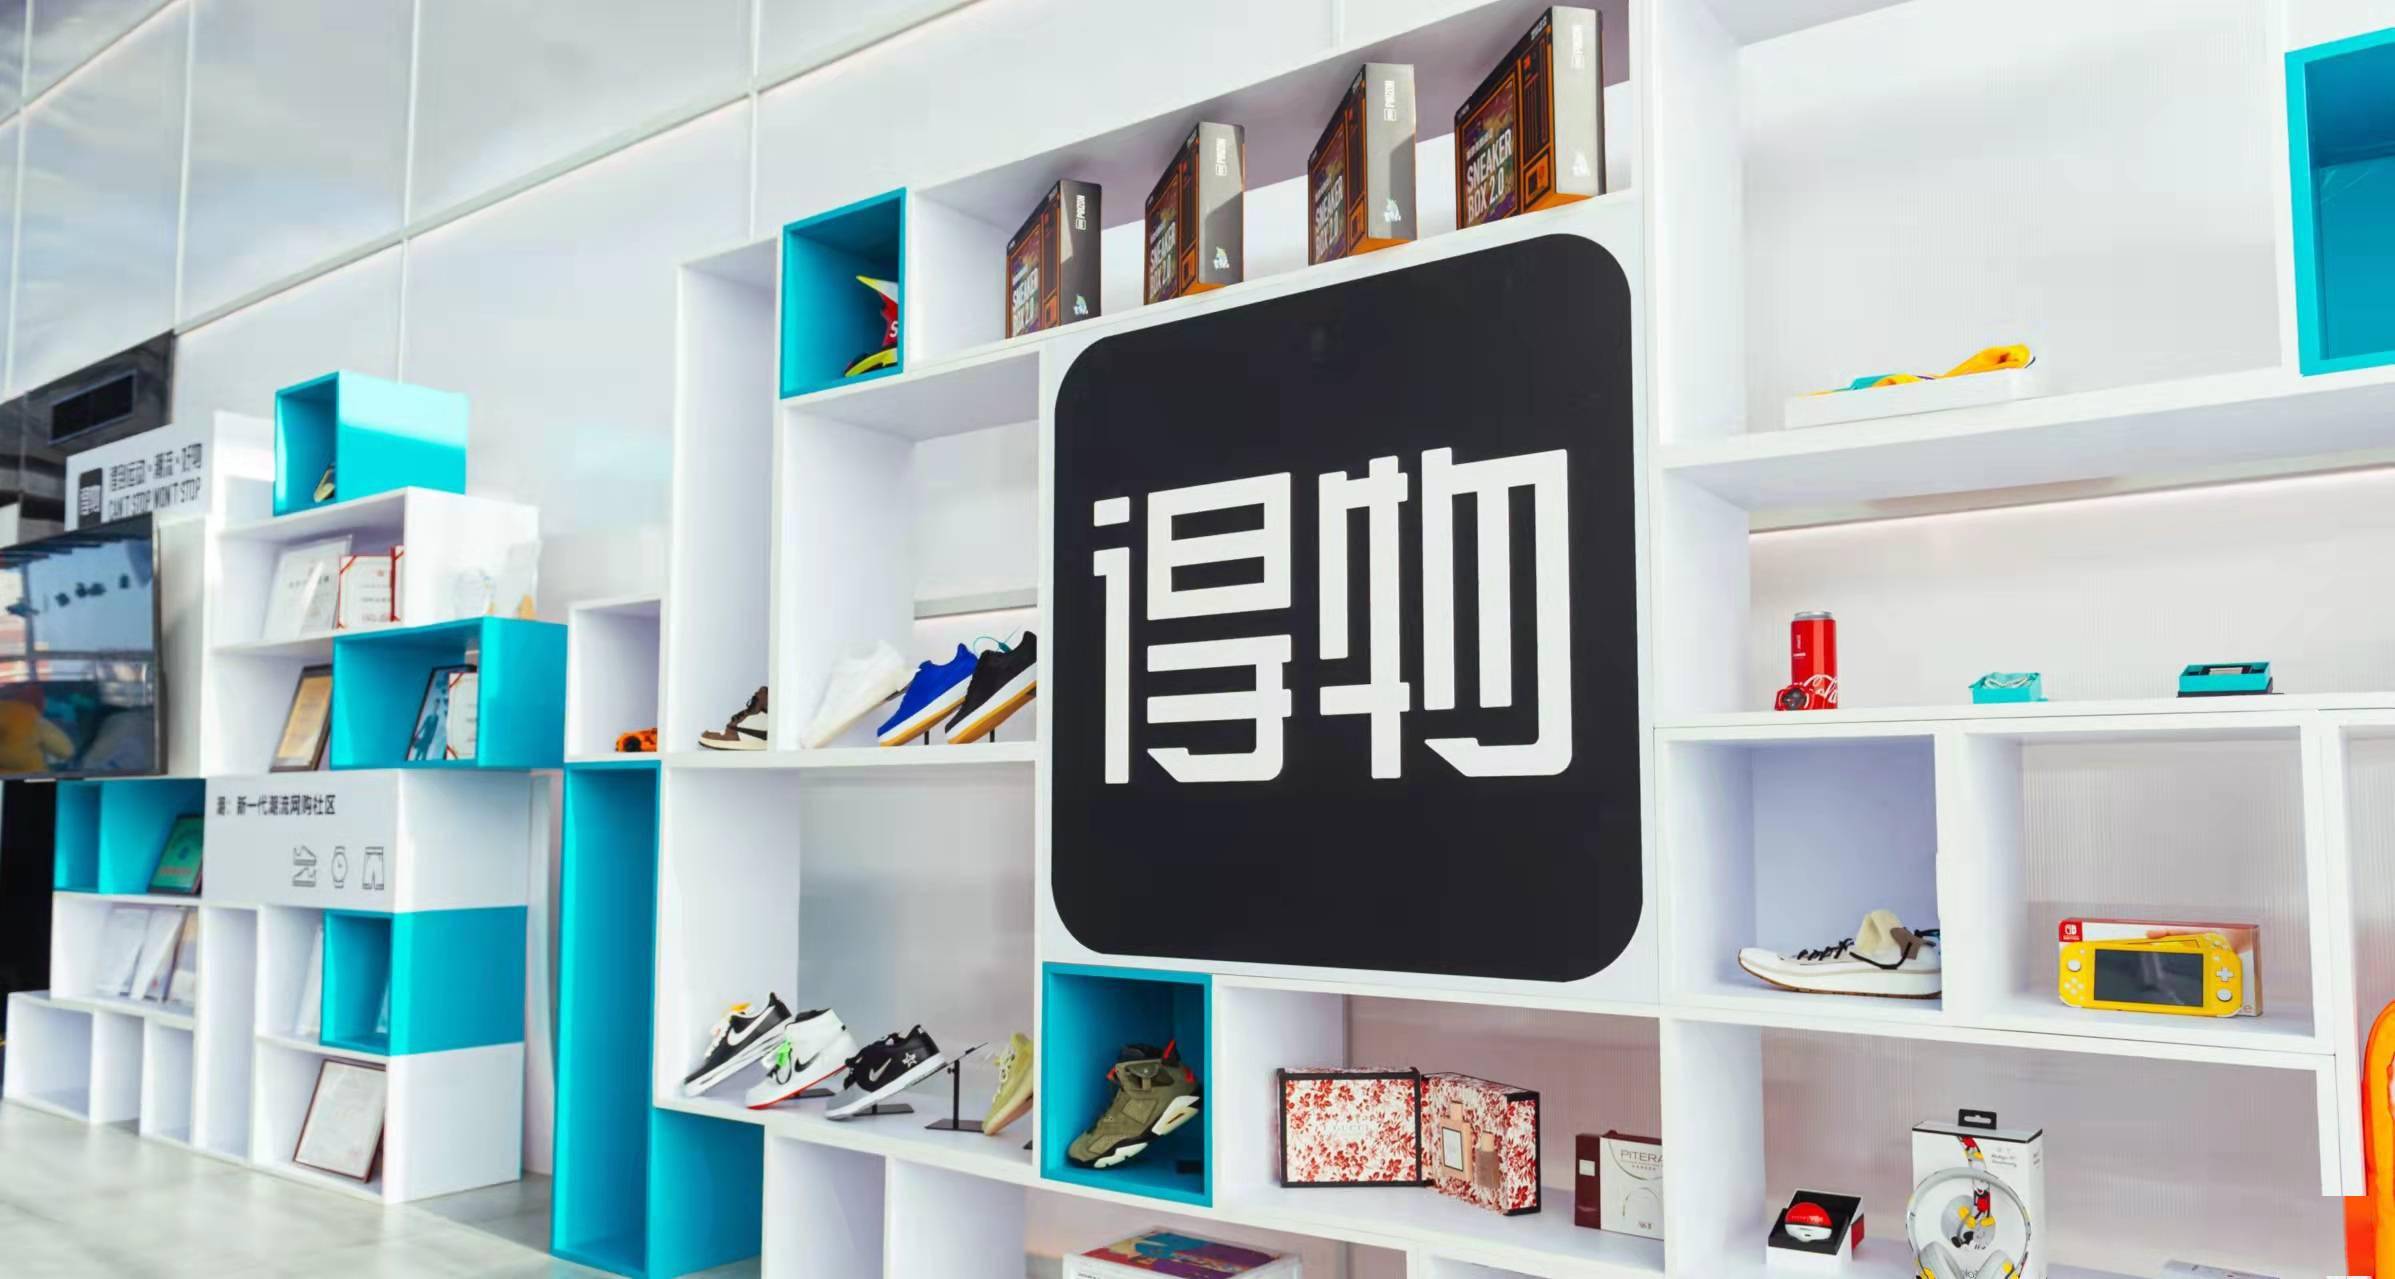 得物app成上海首家获评工信部优秀企业社会责任报告